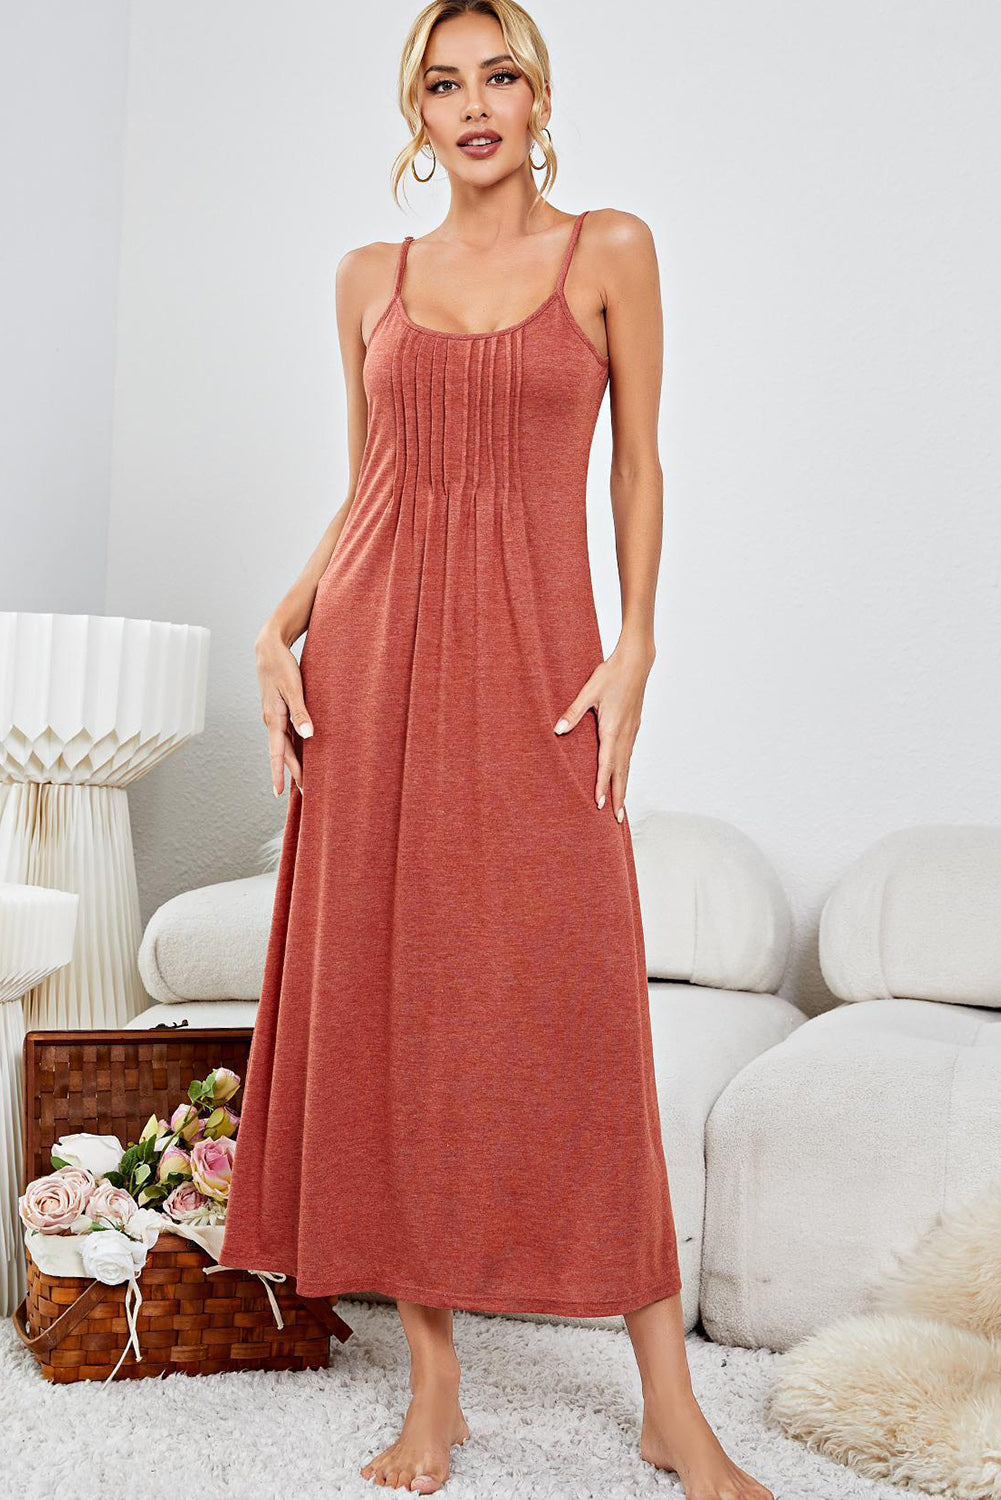 Duga salonska haljina s naborima na naramenice od crvene gline